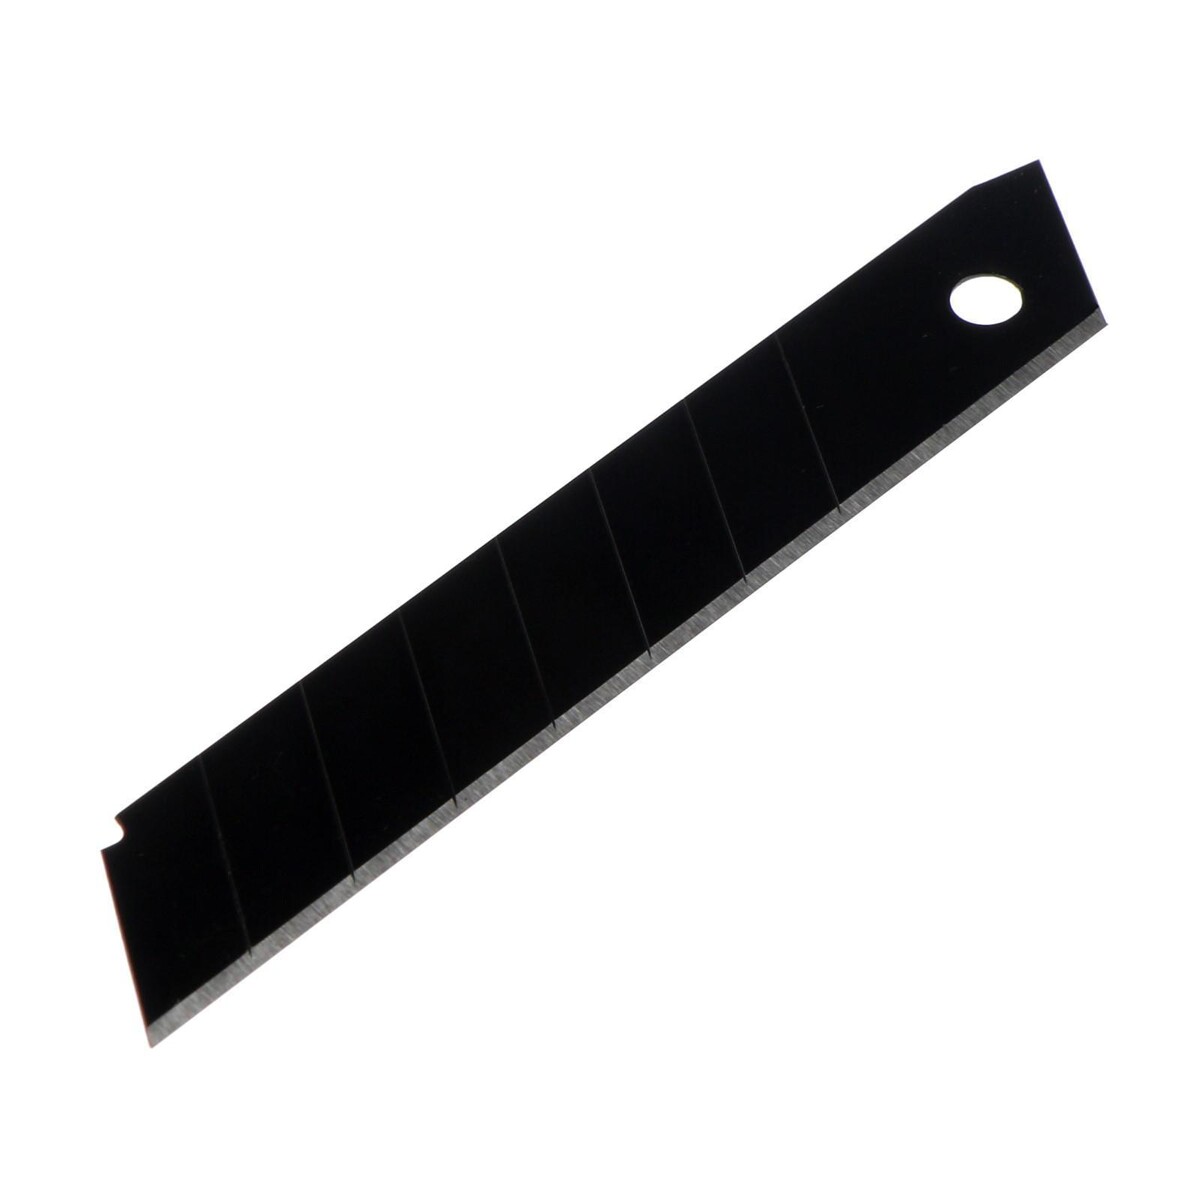 Лезвия для ножей тундра, сегментированные, сталь sk5, 18 х 0.5 мм, 10 шт. лезвия для ножей тундра сегментированные 9 х 0 4 мм 10 контейнеров по 10 лезвий 100 шт